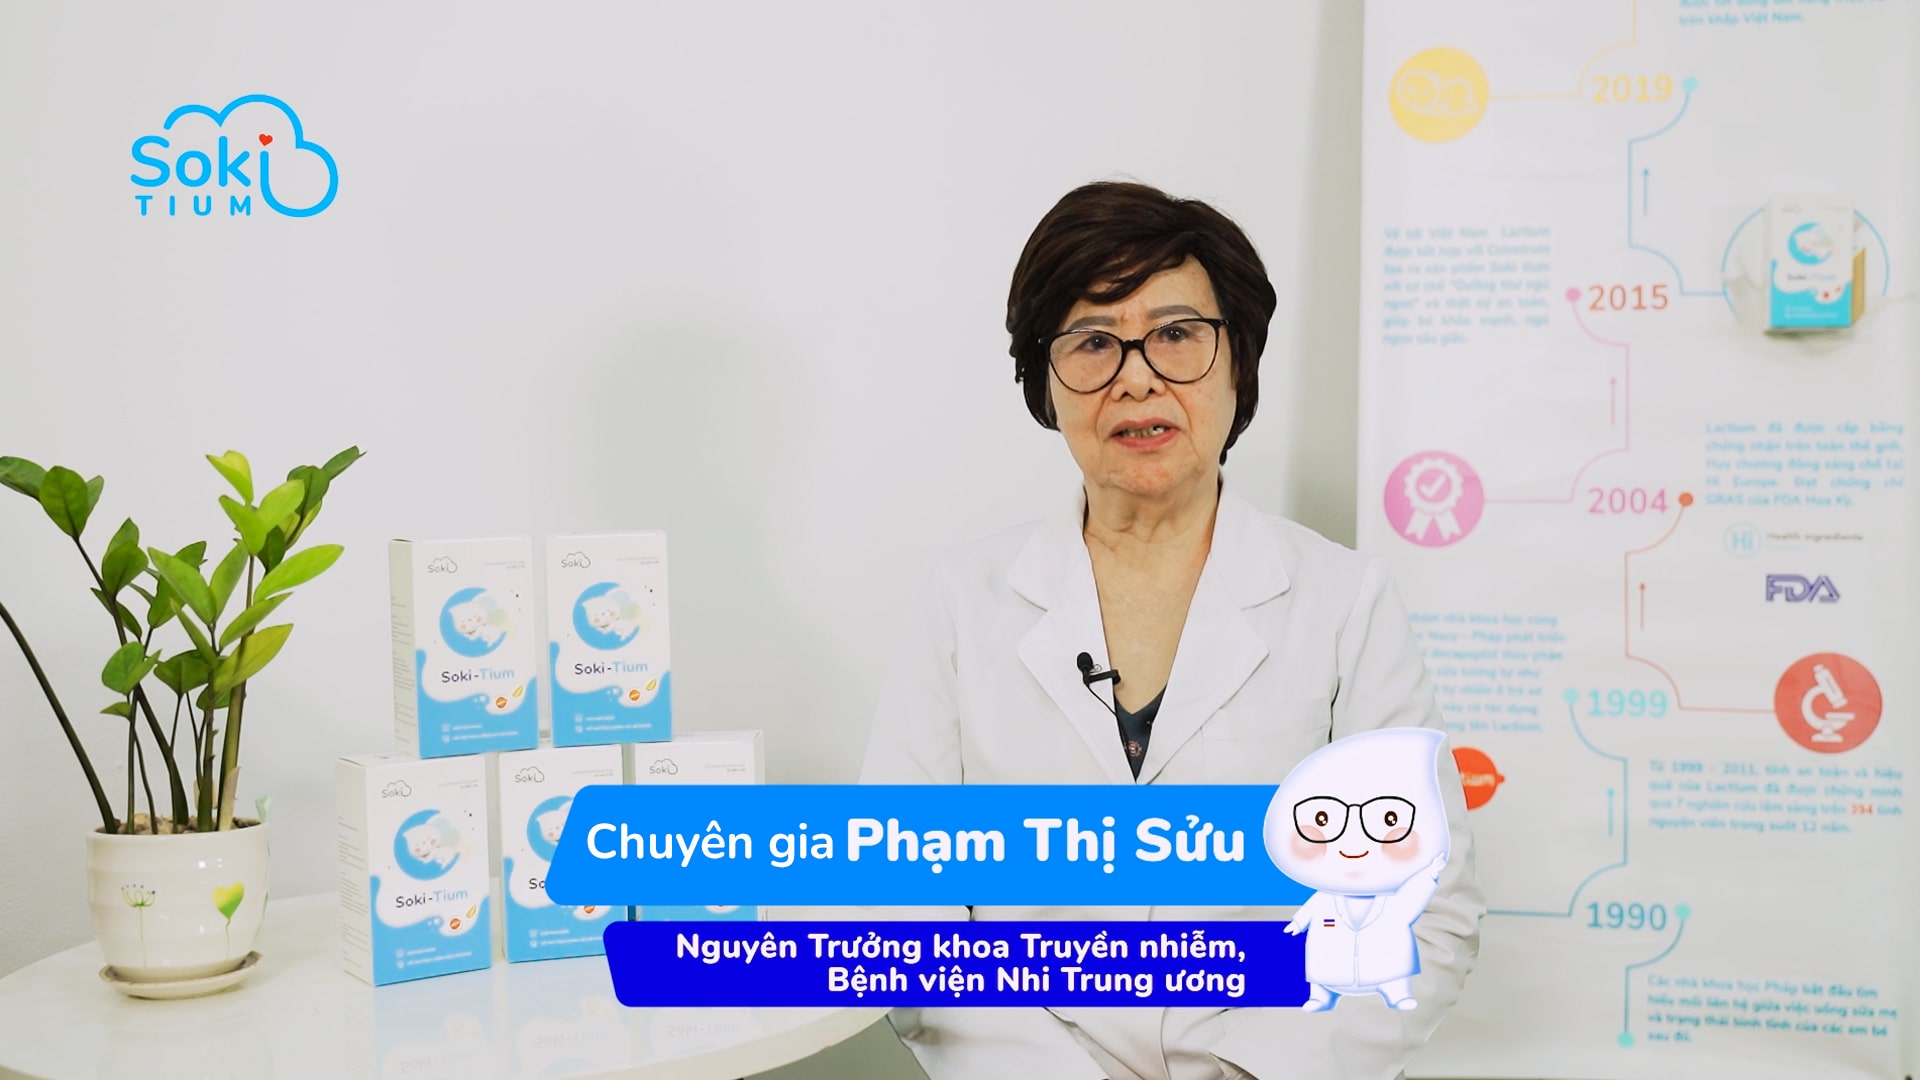 Soki Tium được chuyên gia nhi khoa Phạm Thị Sửu - Nguyên trưởng khoa truyền nhiễm Bệnh viện nhi Trung ương khuyên dùng Soki Tium cho trẻ gặp tình trạng vặn mình quấy đêm